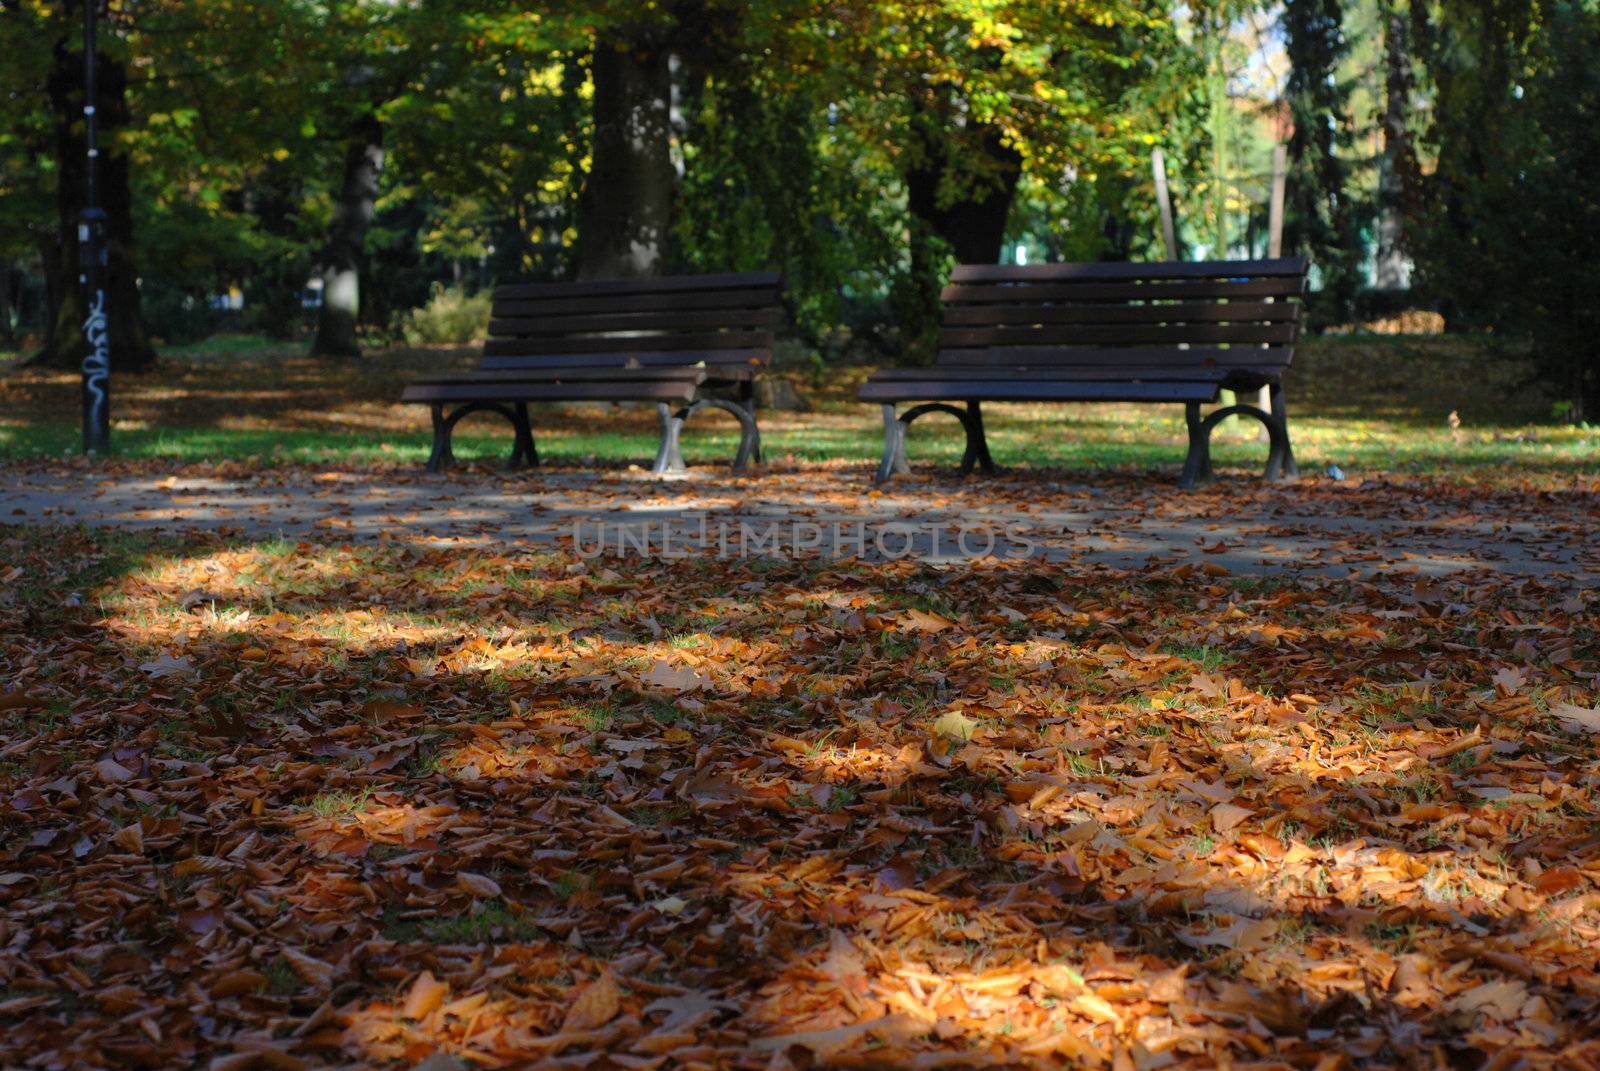 Benches in the park, Autumn season. by wojciechkozlowski